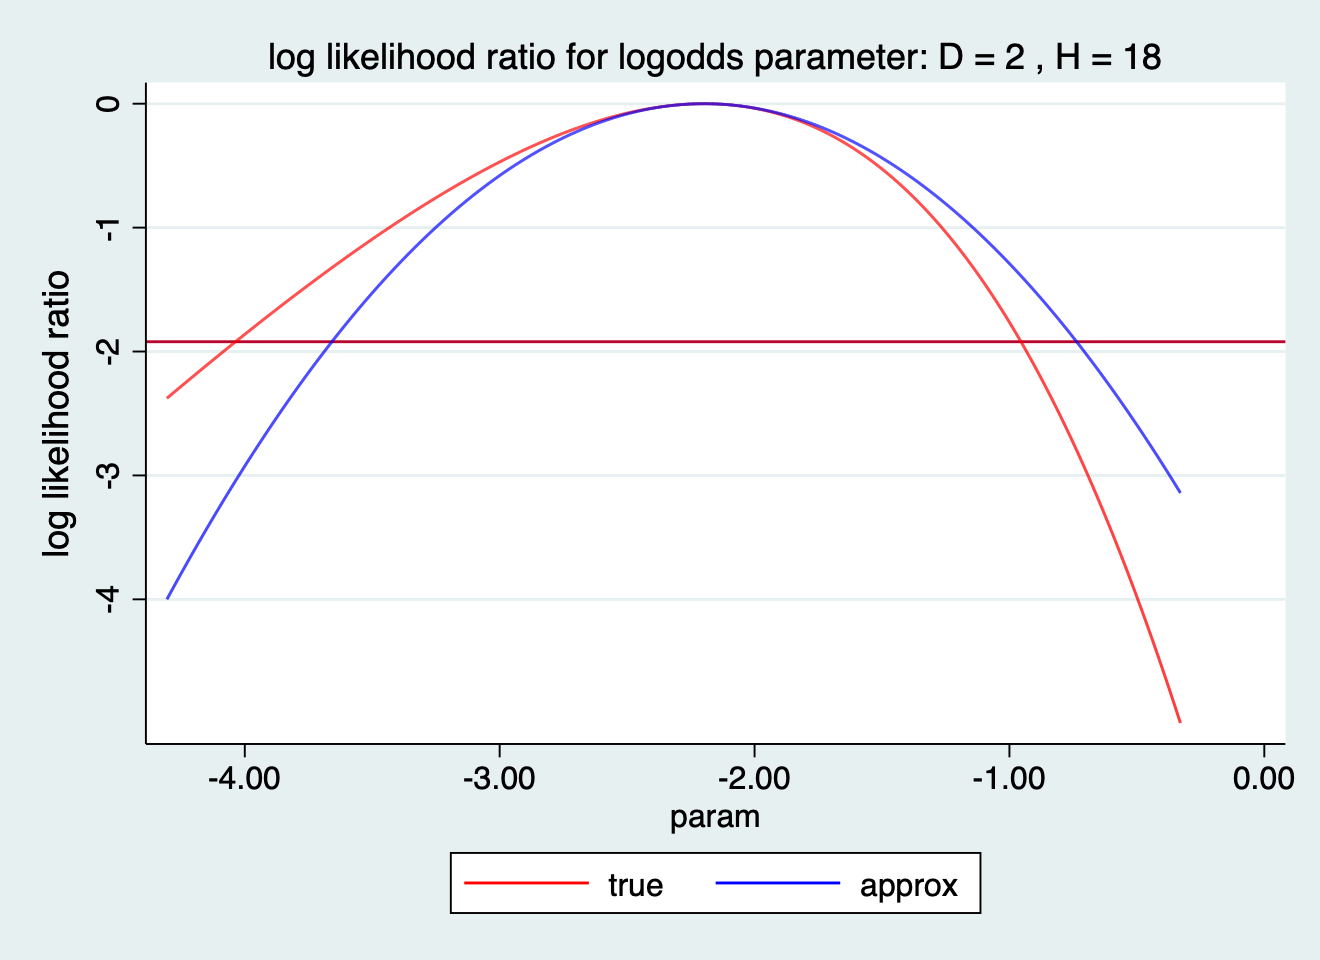 log likelihood ratio for logodds paramter: D=2 H=18